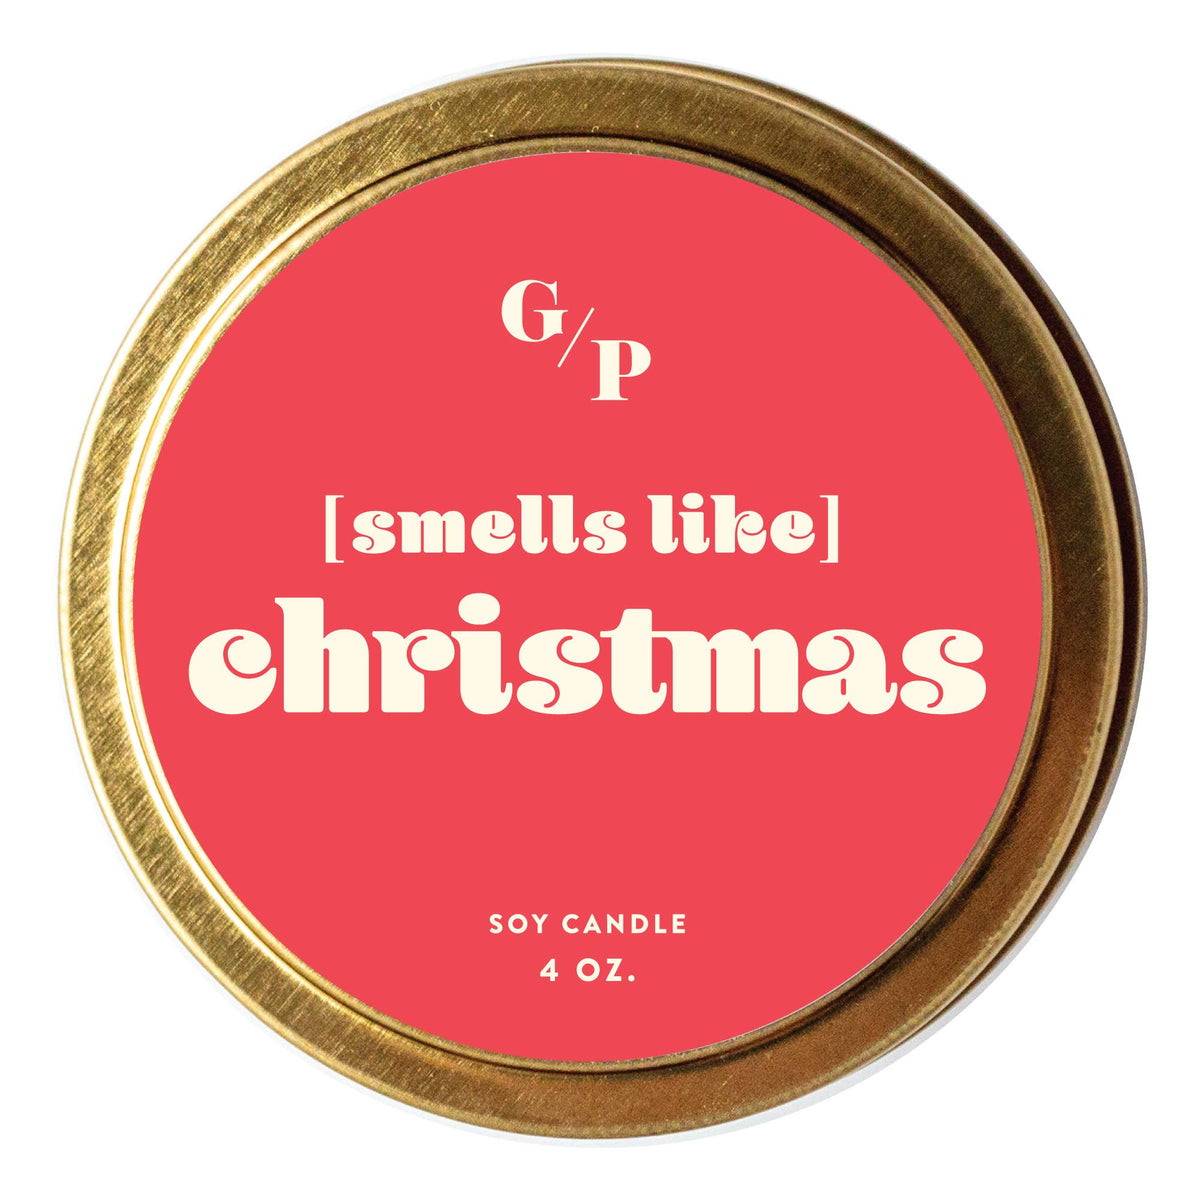 [Smells Like] Christmas Just Because 4 oz. Candle Tin